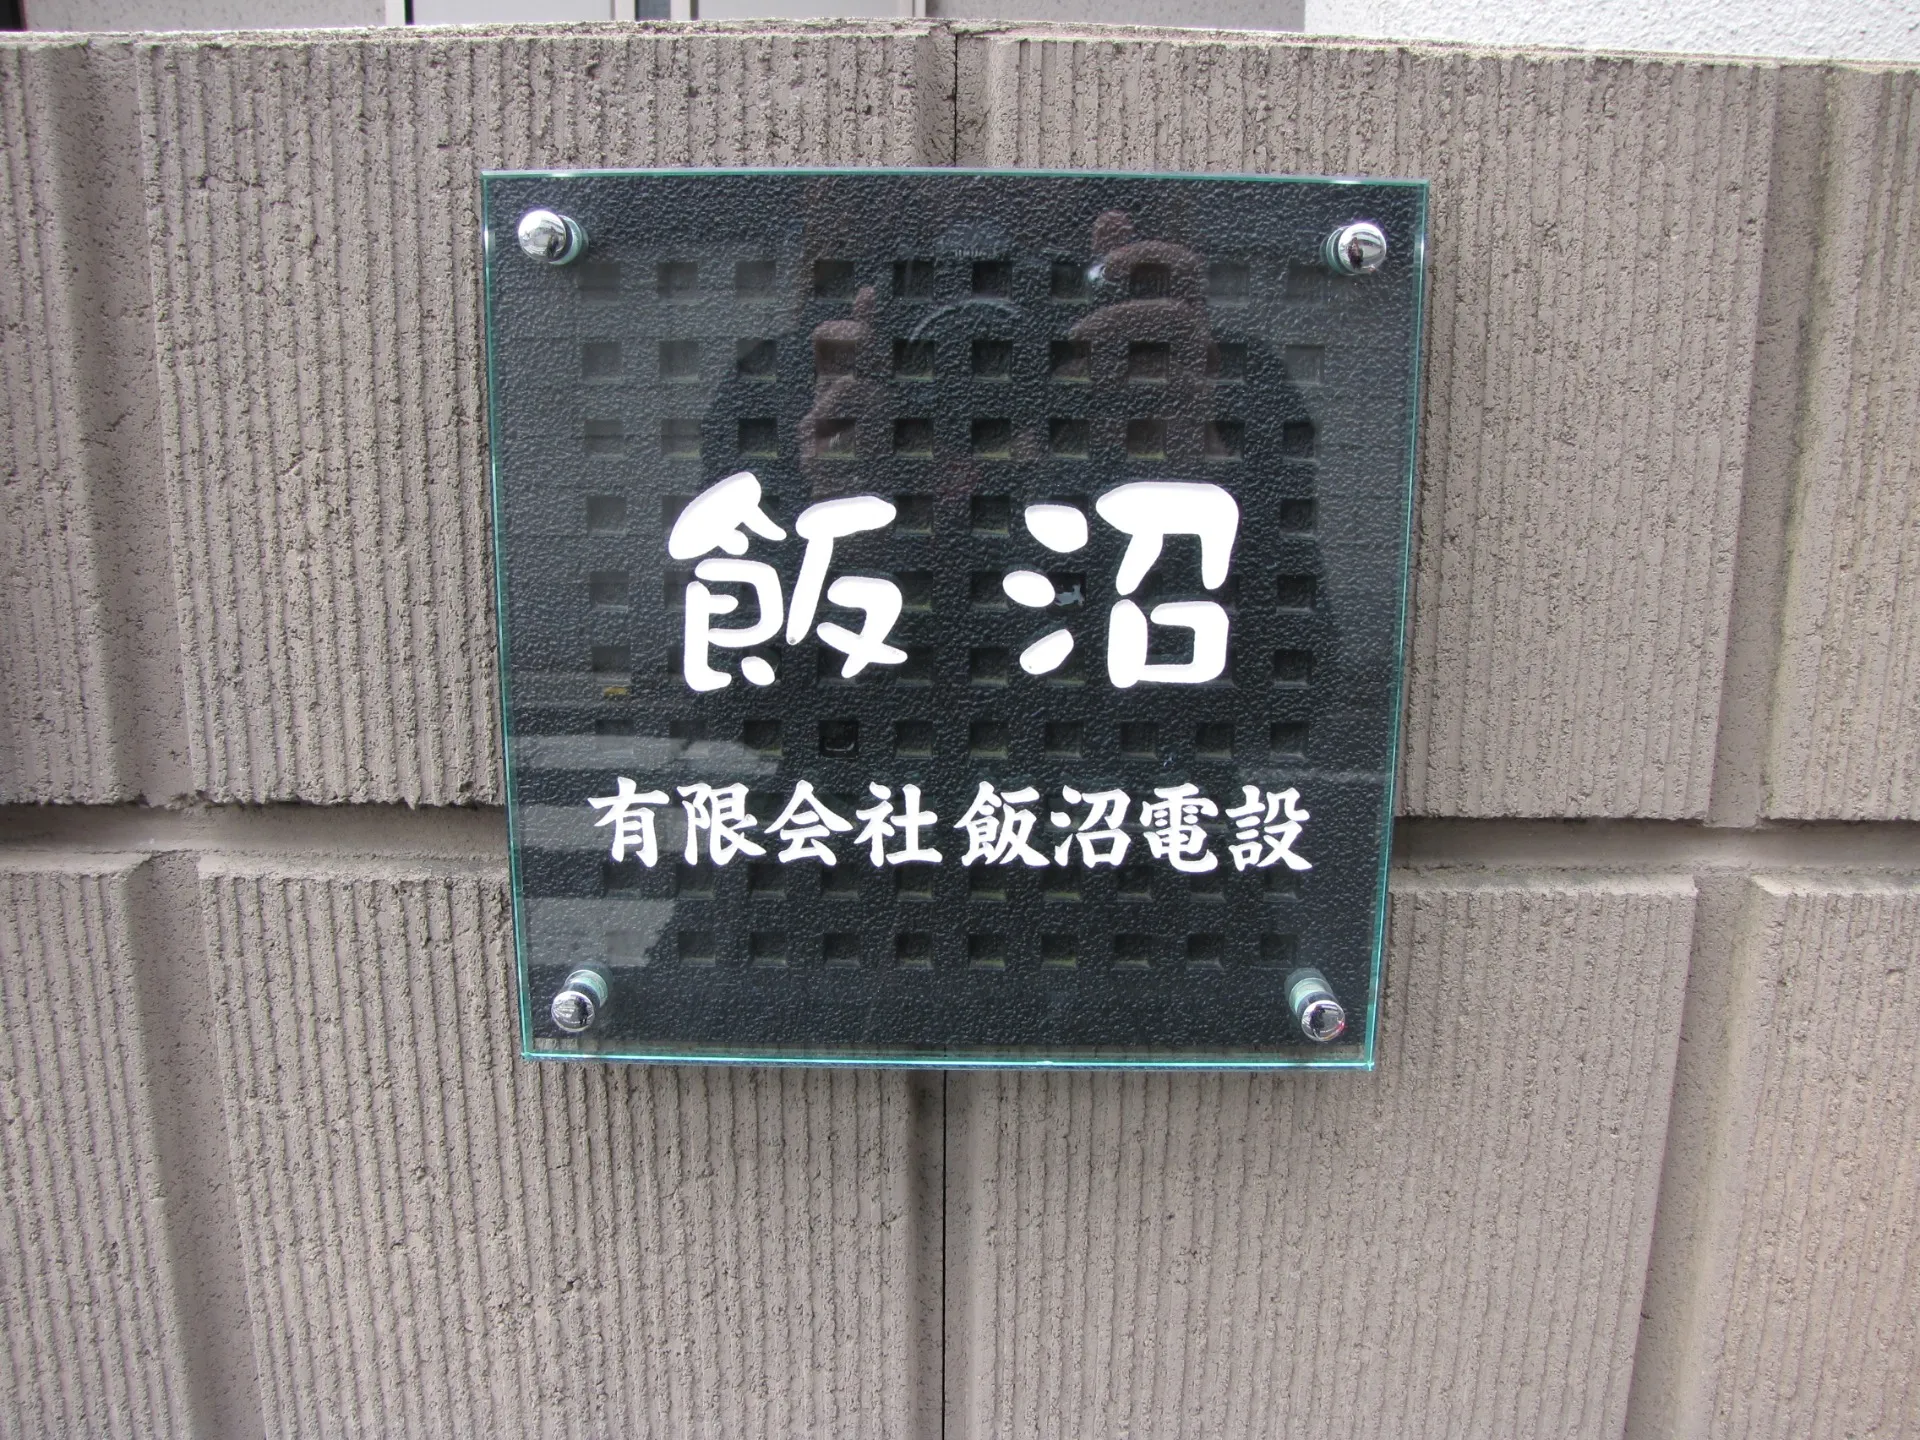 江戸川区の飯沼電設です。電気工事士の求人用ブログ始めます。